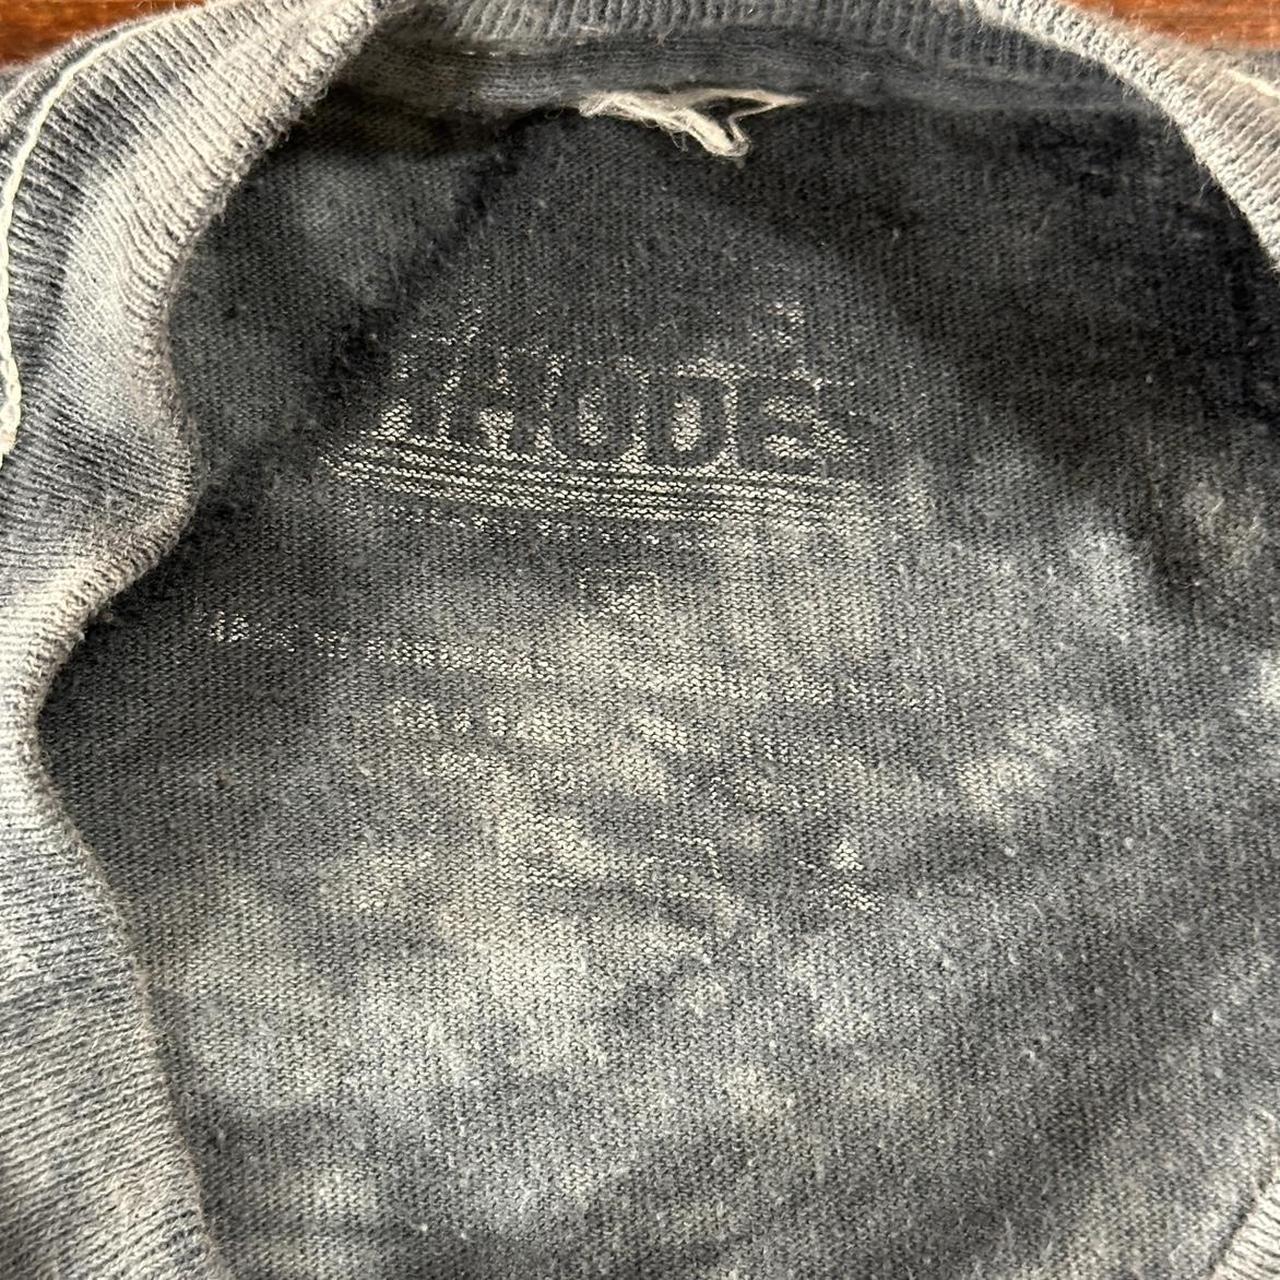 Steven Rhodes Cerberus Black Tie-Dye T-Shirt Mommy!... - Depop